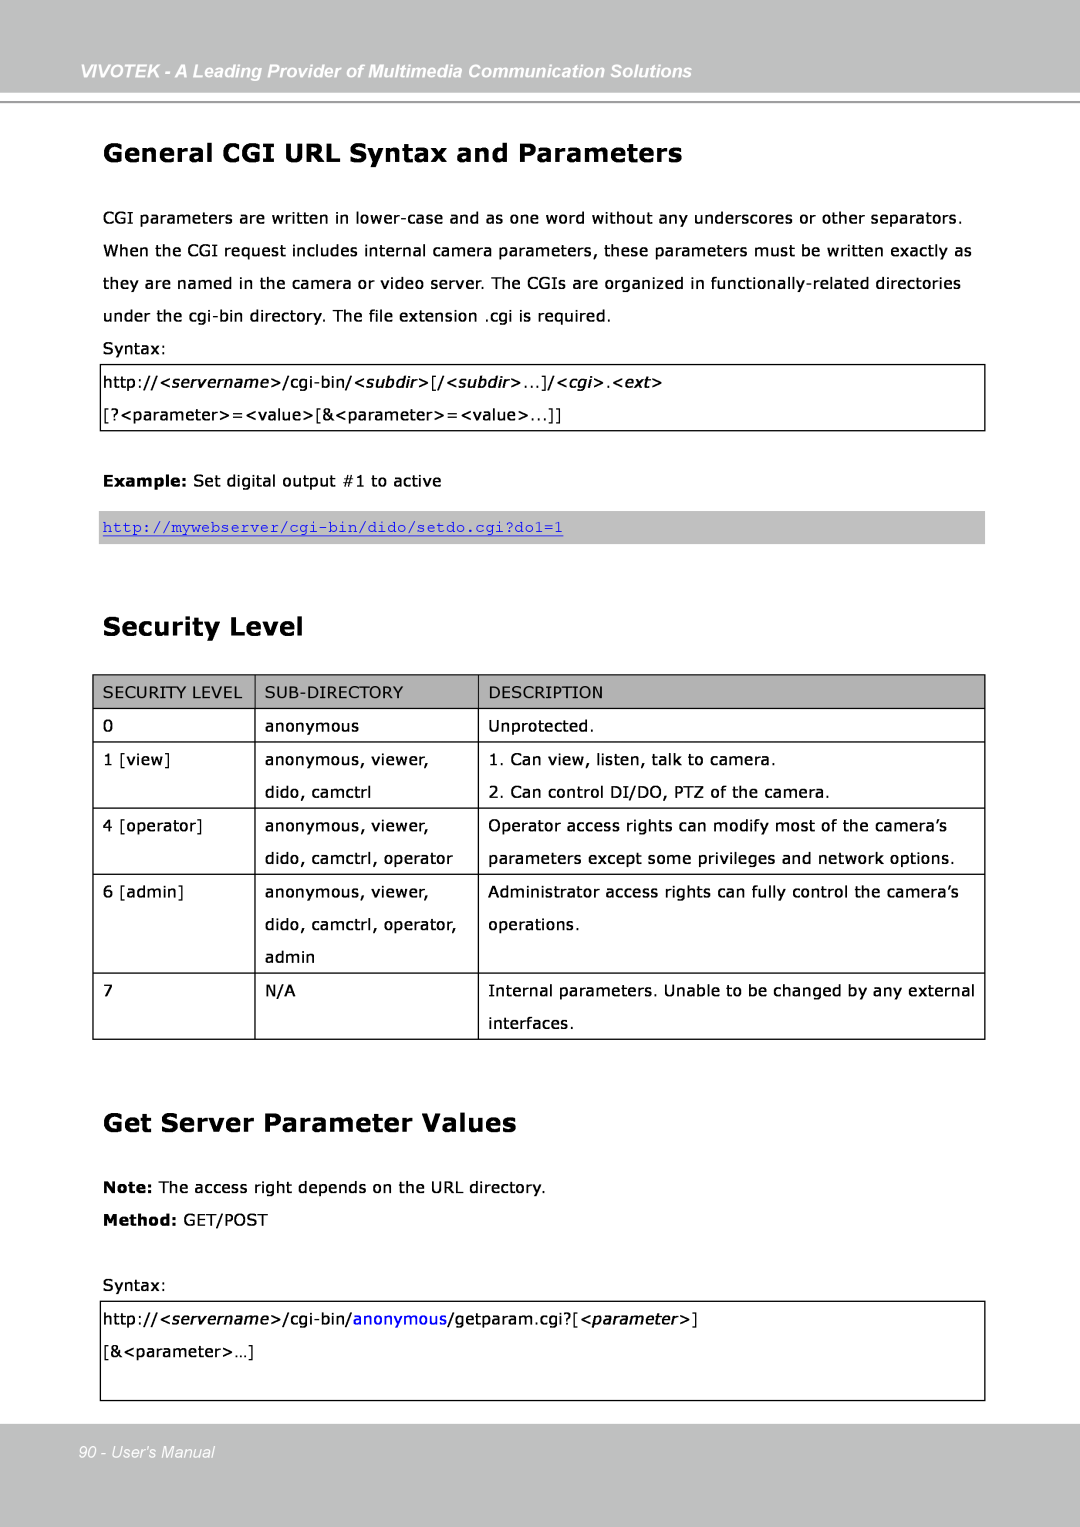 Vivotek FD7141(V) General CGI URL Syntax and Parameters, Security Level, Get Server Parameter Values, Method: GET/POST 